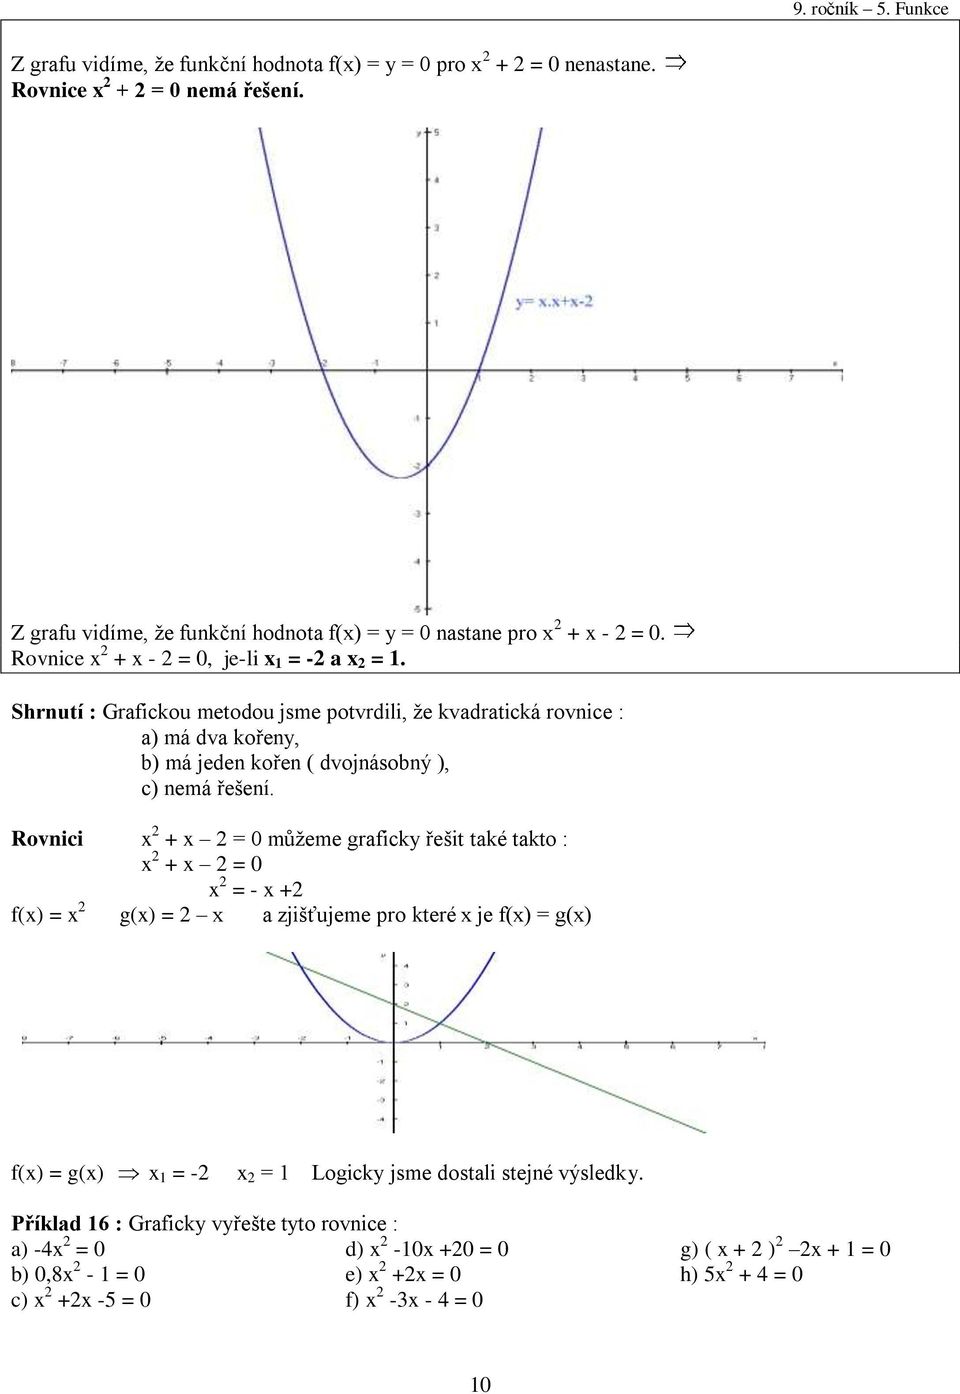 Shrnutí : Grafickou metodou jsme potvrdili, že kvadratická rovnice : a) má dva kořeny, b) má jeden kořen ( dvojnásobný ), c) nemá řešení.